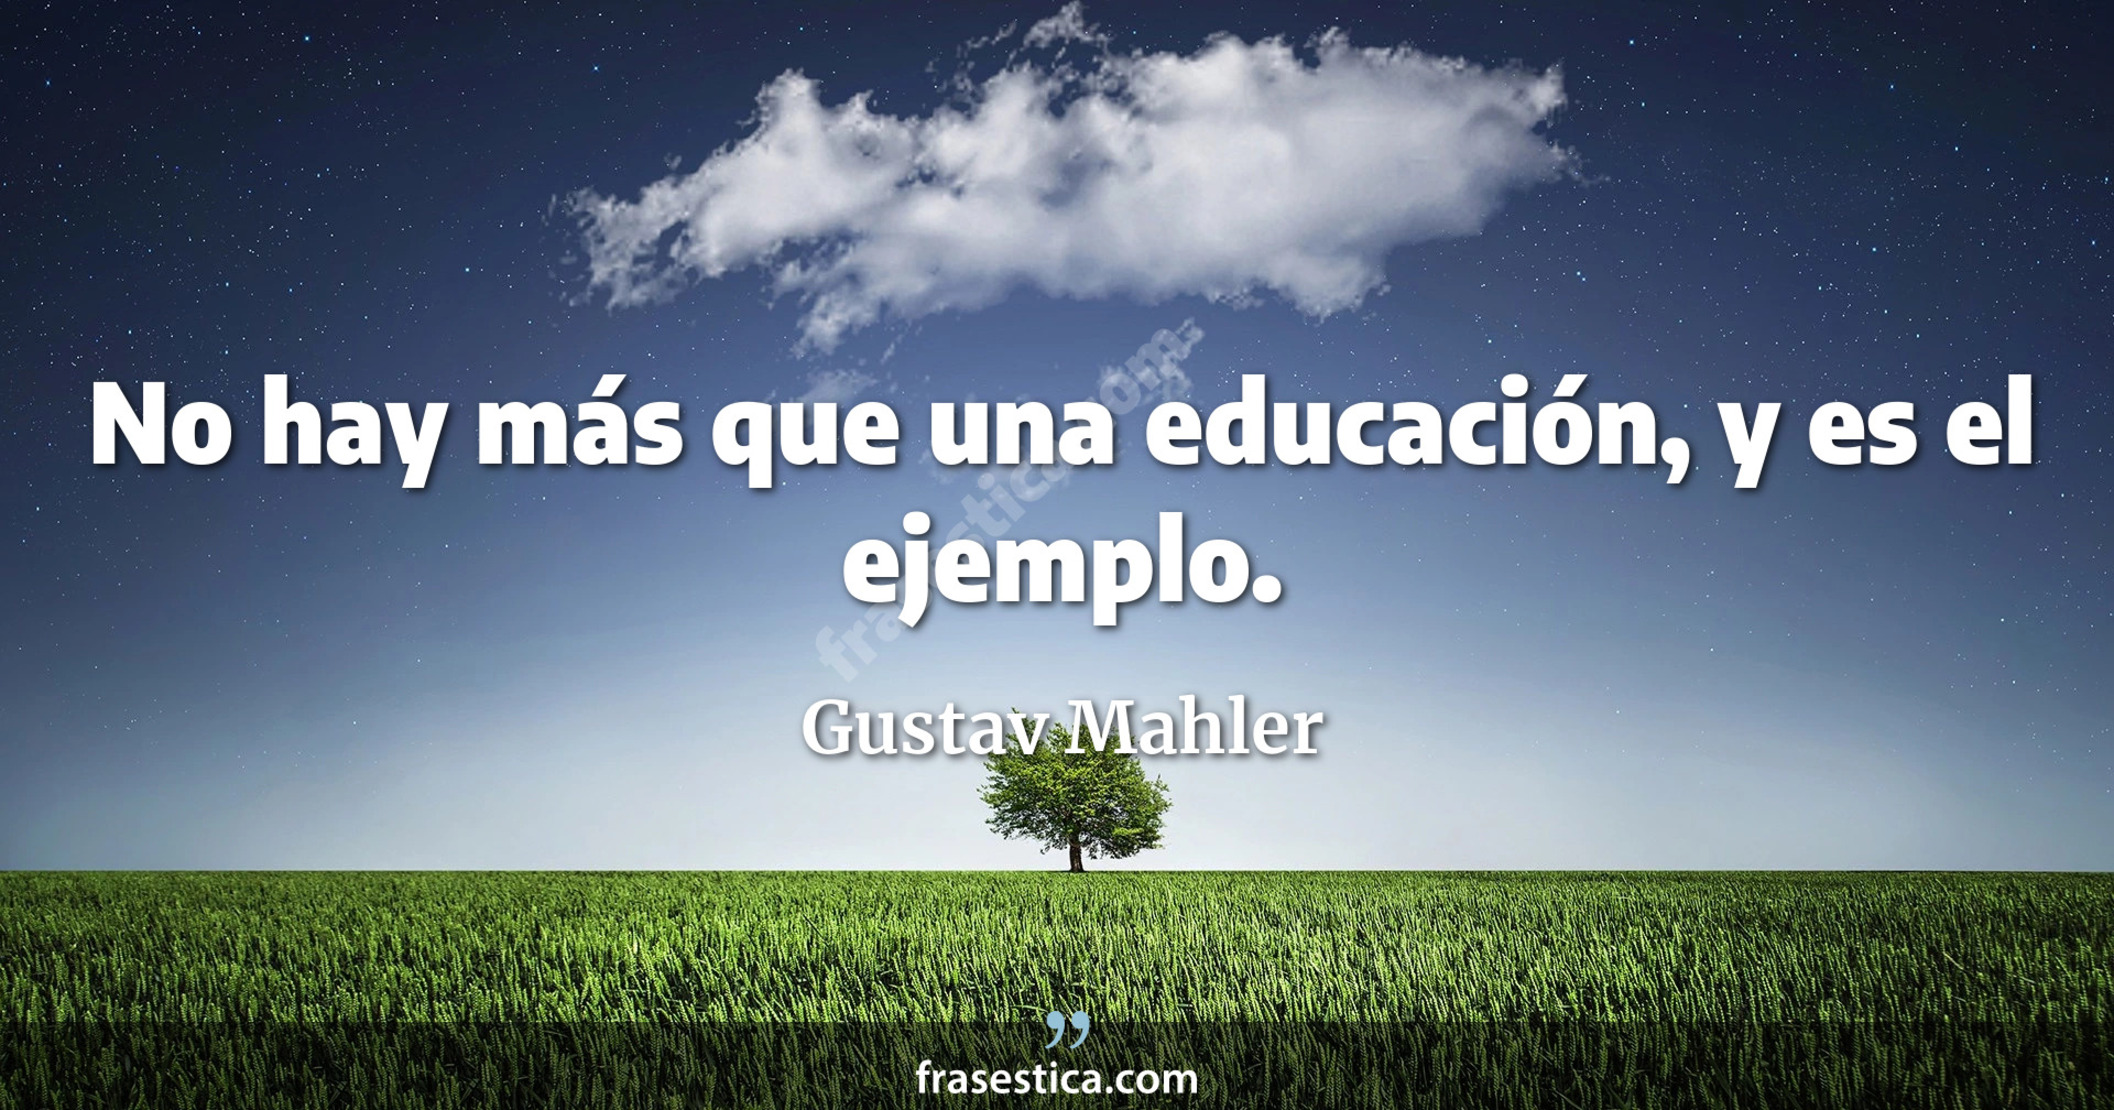 No hay más que una educación, y es el ejemplo. - Gustav Mahler